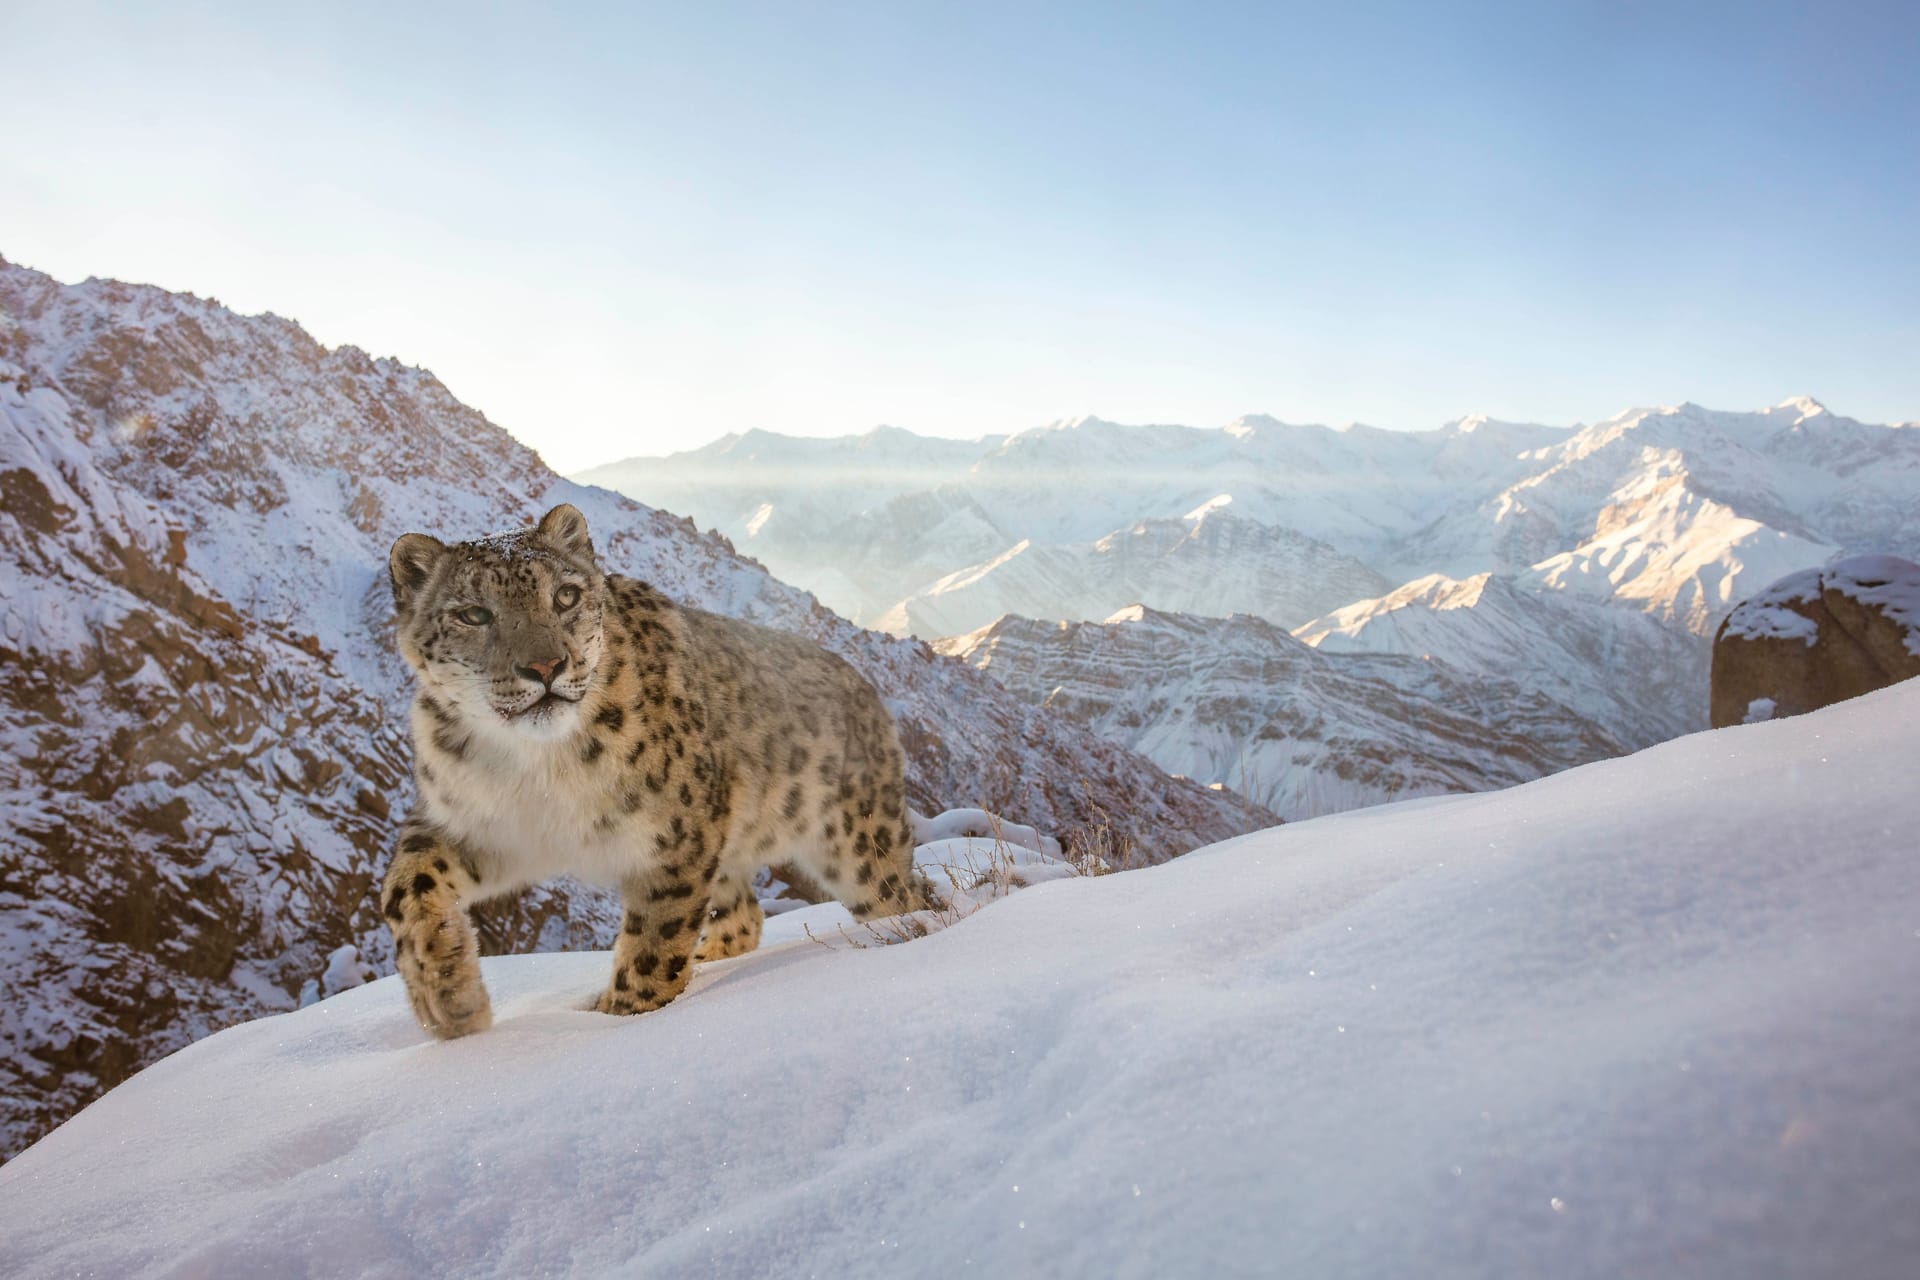 Ein Schneeleopard im indischen Himalaya: Sascha Fonseca aus den Vereinten Arabischen Emiraten gewann mit diesem Bild den ersten Platz in der Kategorie "Tiere in ihrem Lebensraum".